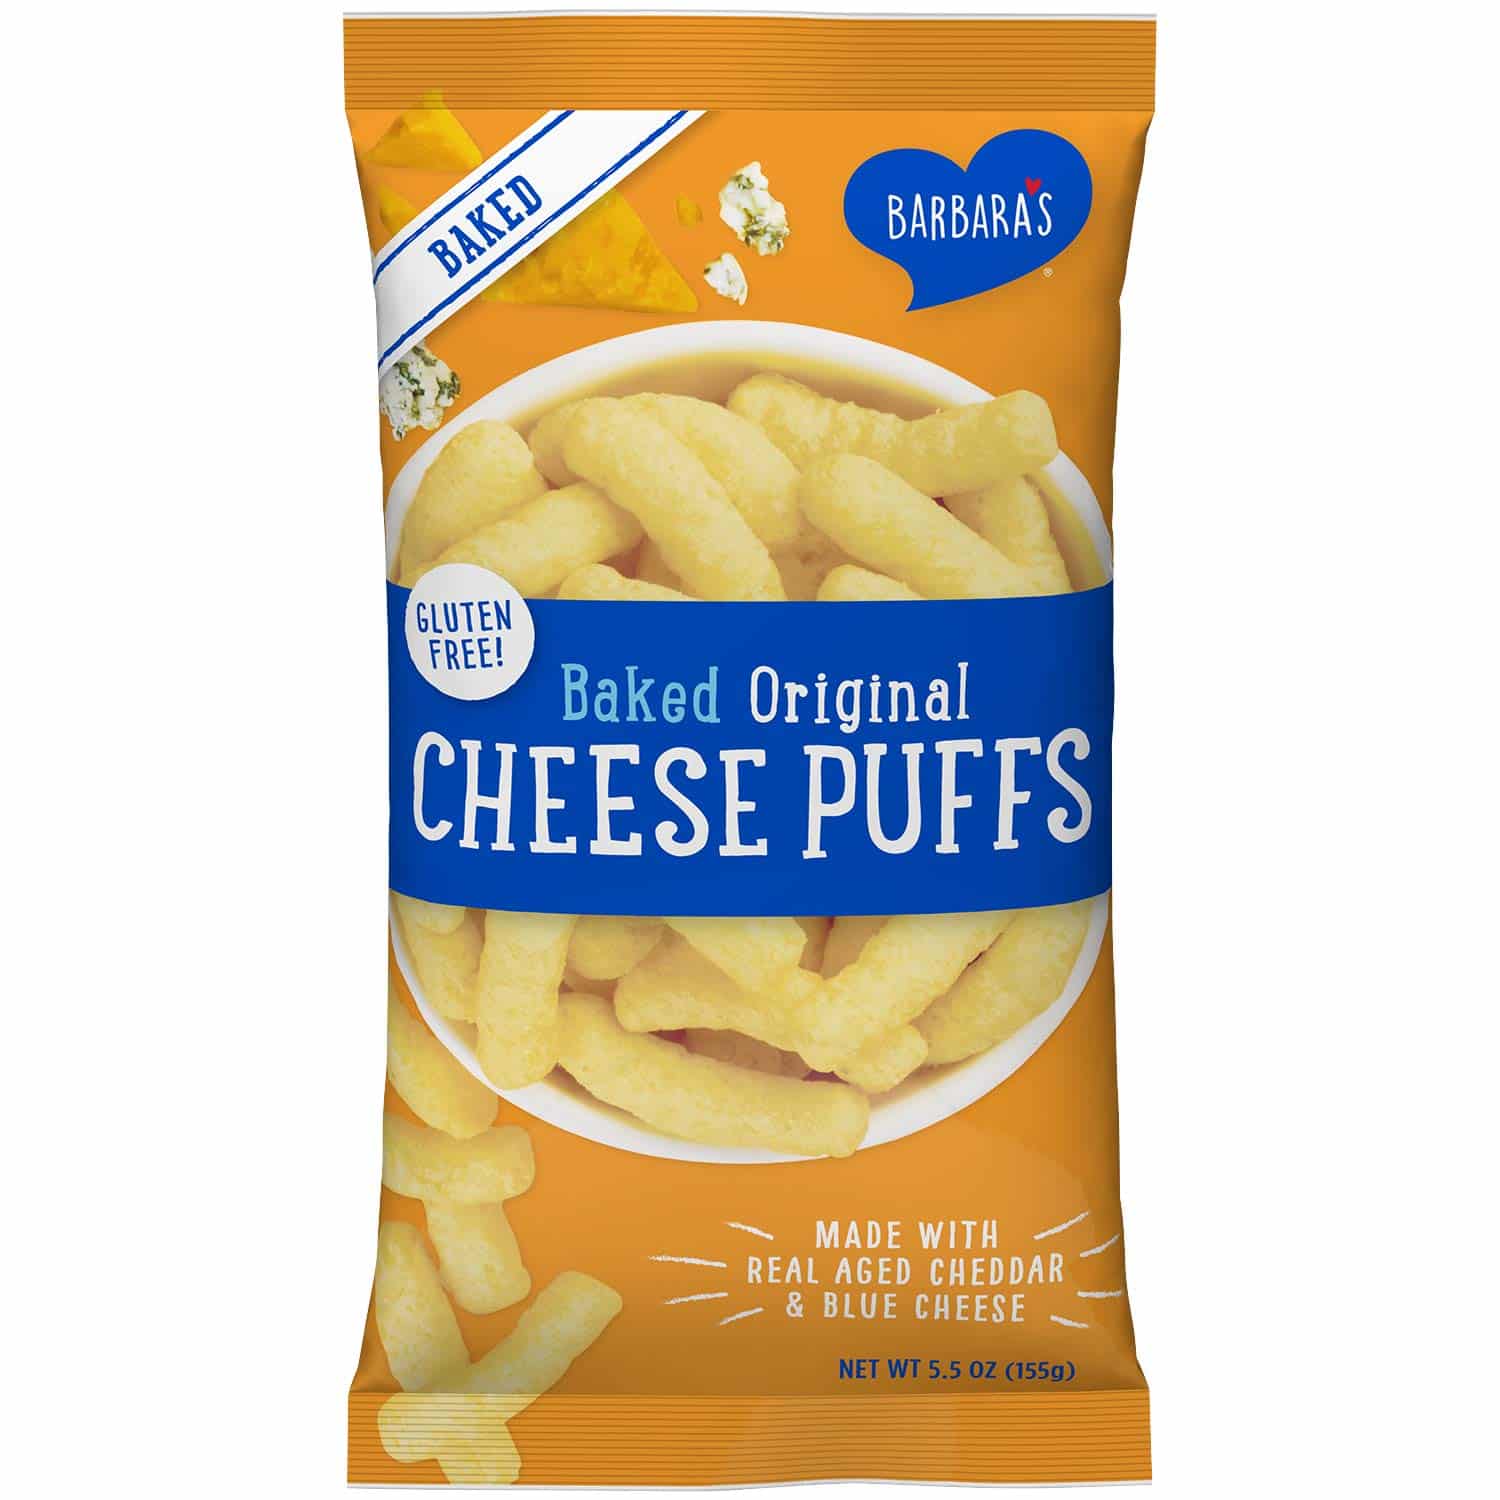 Barbara's All Natural Cheese Puffs